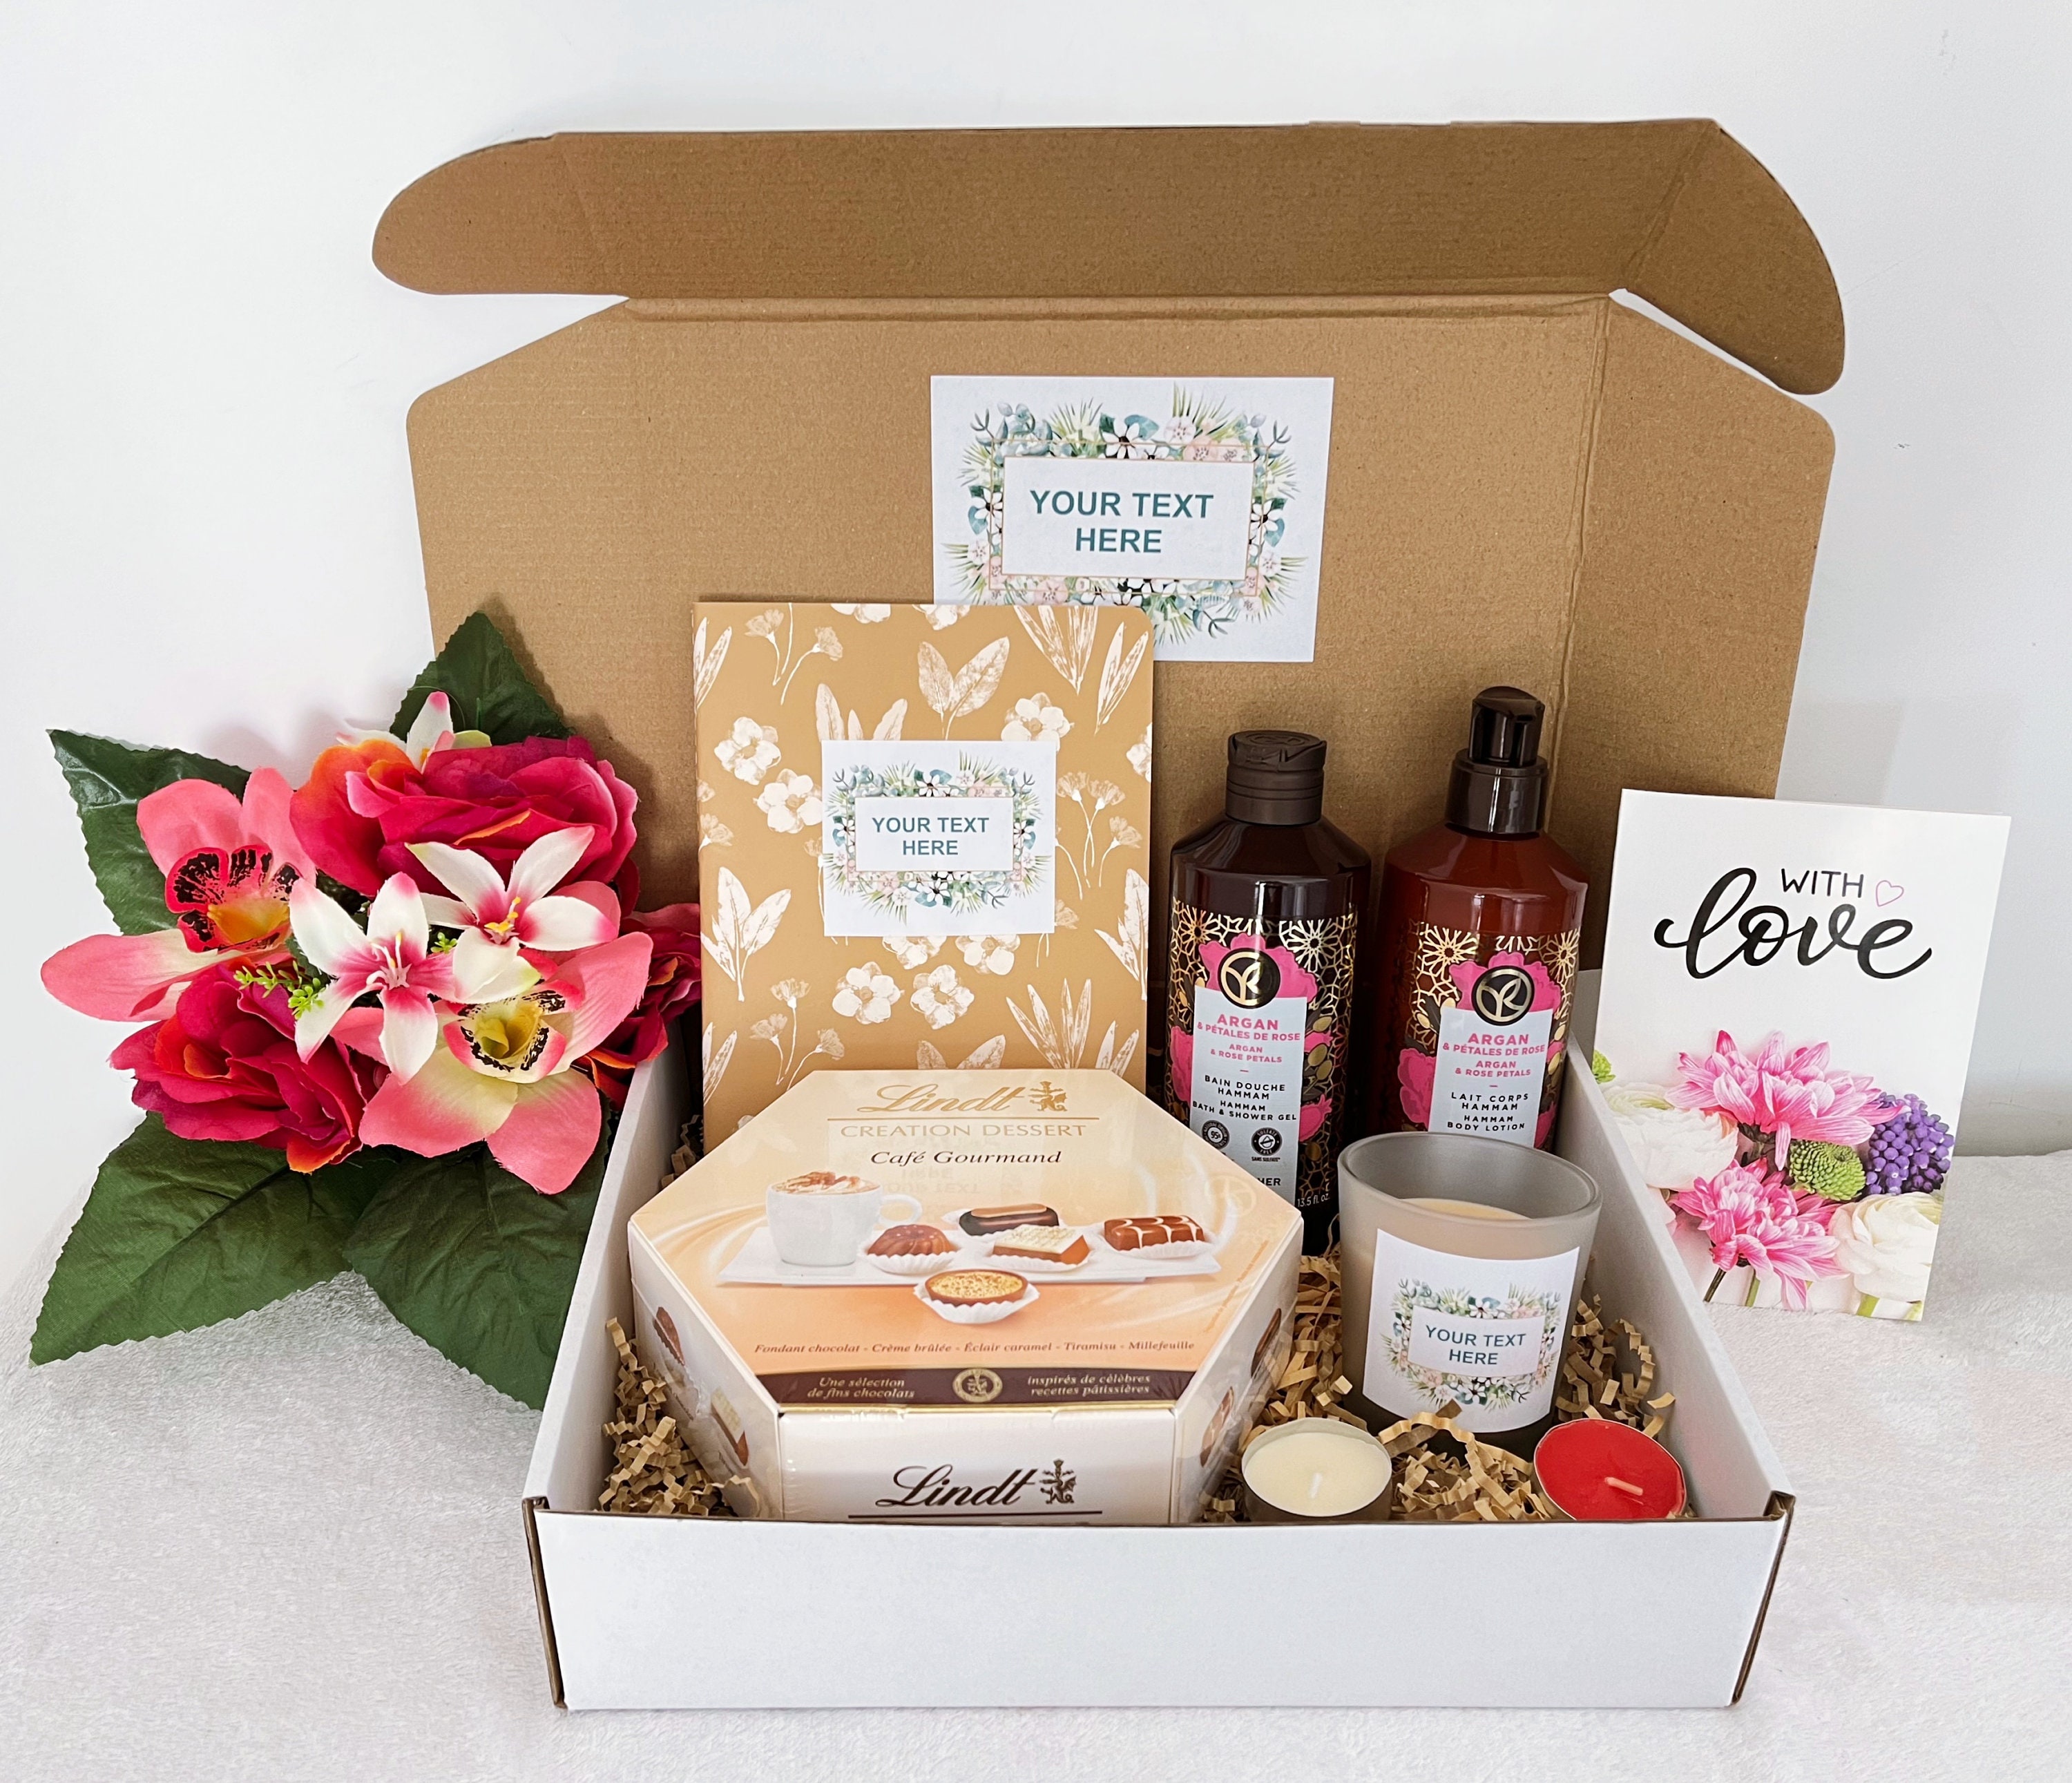 Regalos Personalizados Oba - ❤️❤️Pedido realizado Packs Box Regalos🥰 Caja  de regalo para dama Mujer empoderada - 8 de marzo Día Internacional de la  Mujer ¡Armamos el box que necesites!🎁😍 ☑☑ Caja